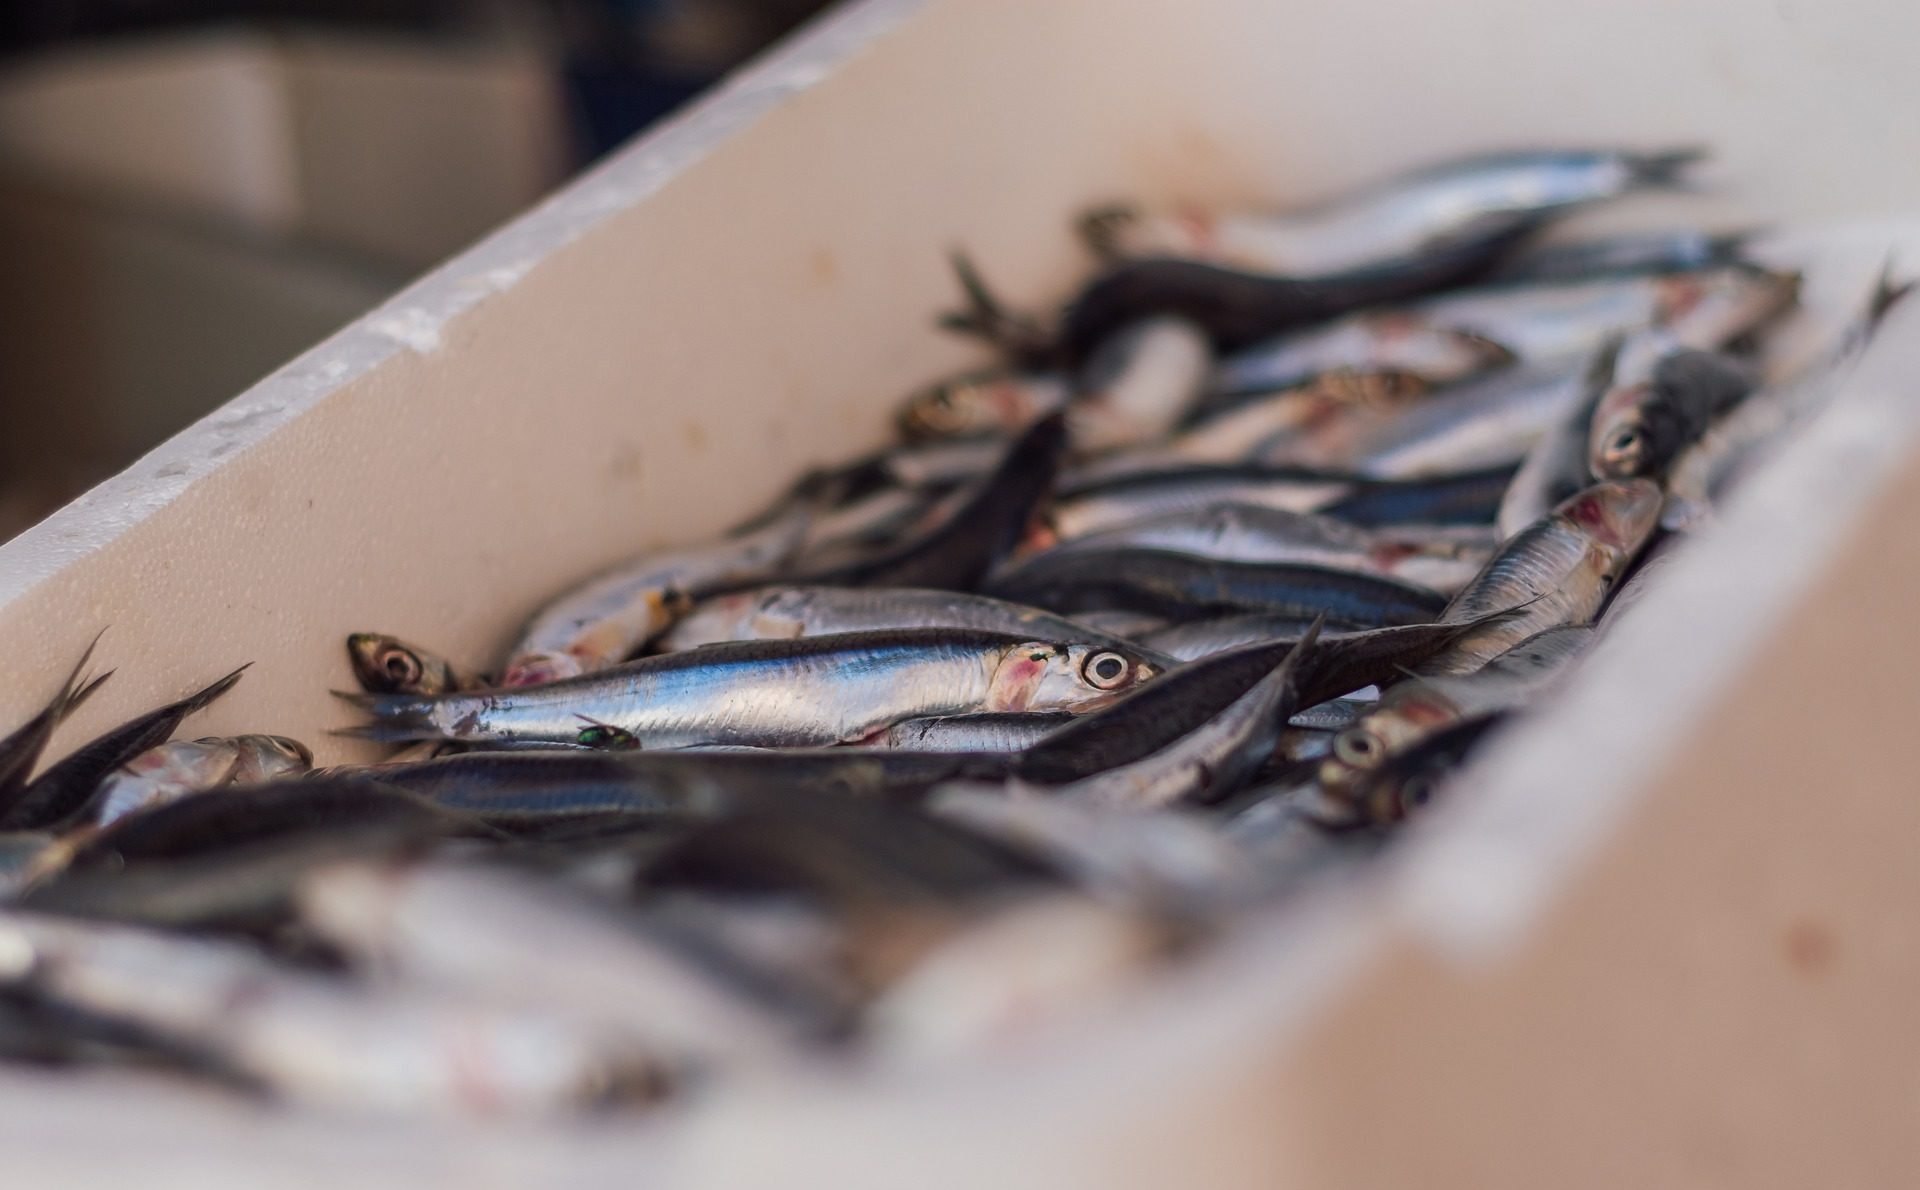 Les sardines maigrissent ! Le changement climatique mis en cause - Curieux!